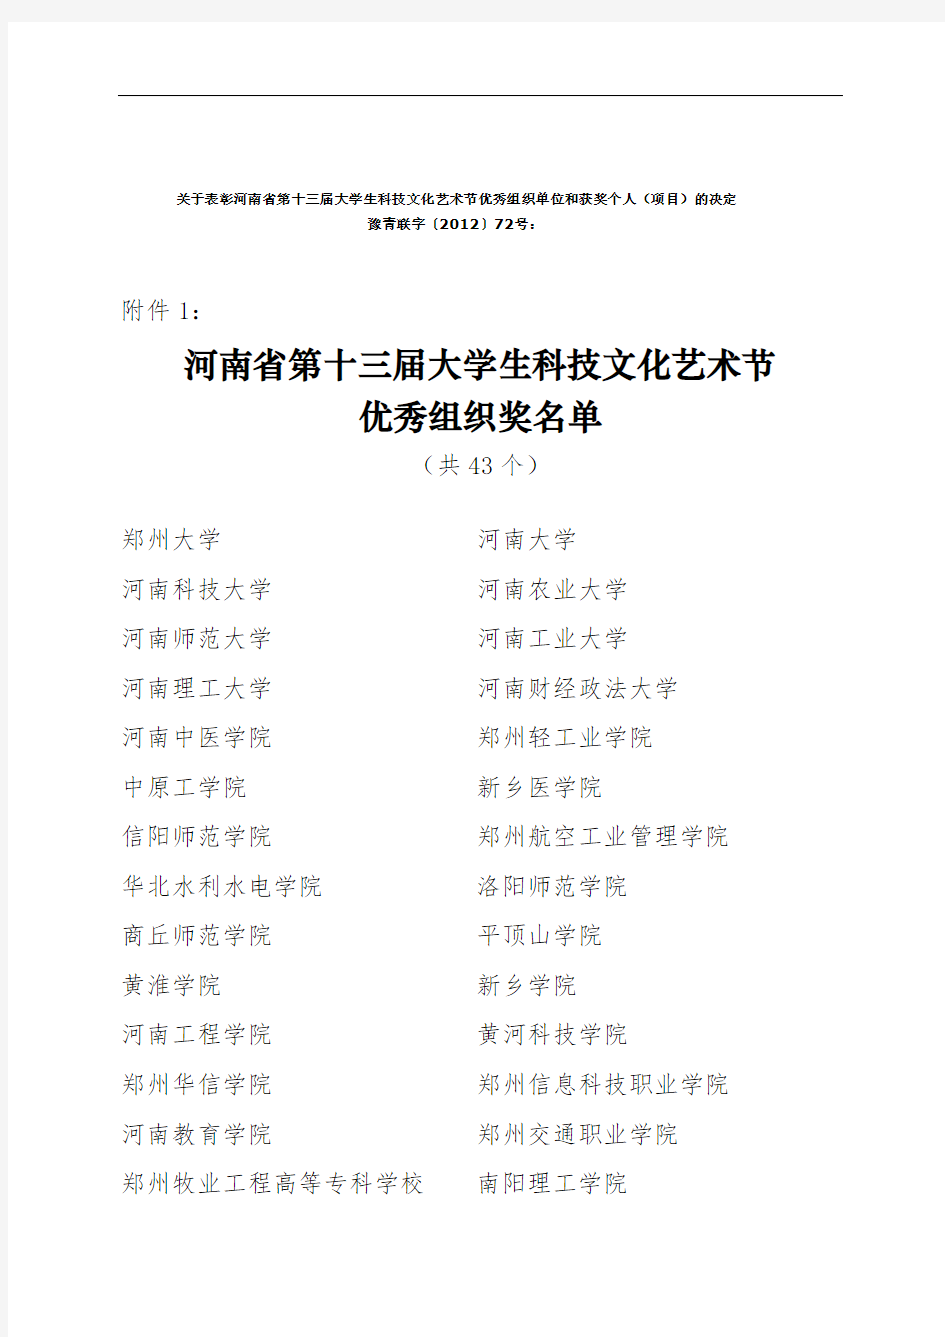 关于表彰河南省第十三届大学生科技文化艺术节优秀组织单位和获奖个人(项目)的决定(1)